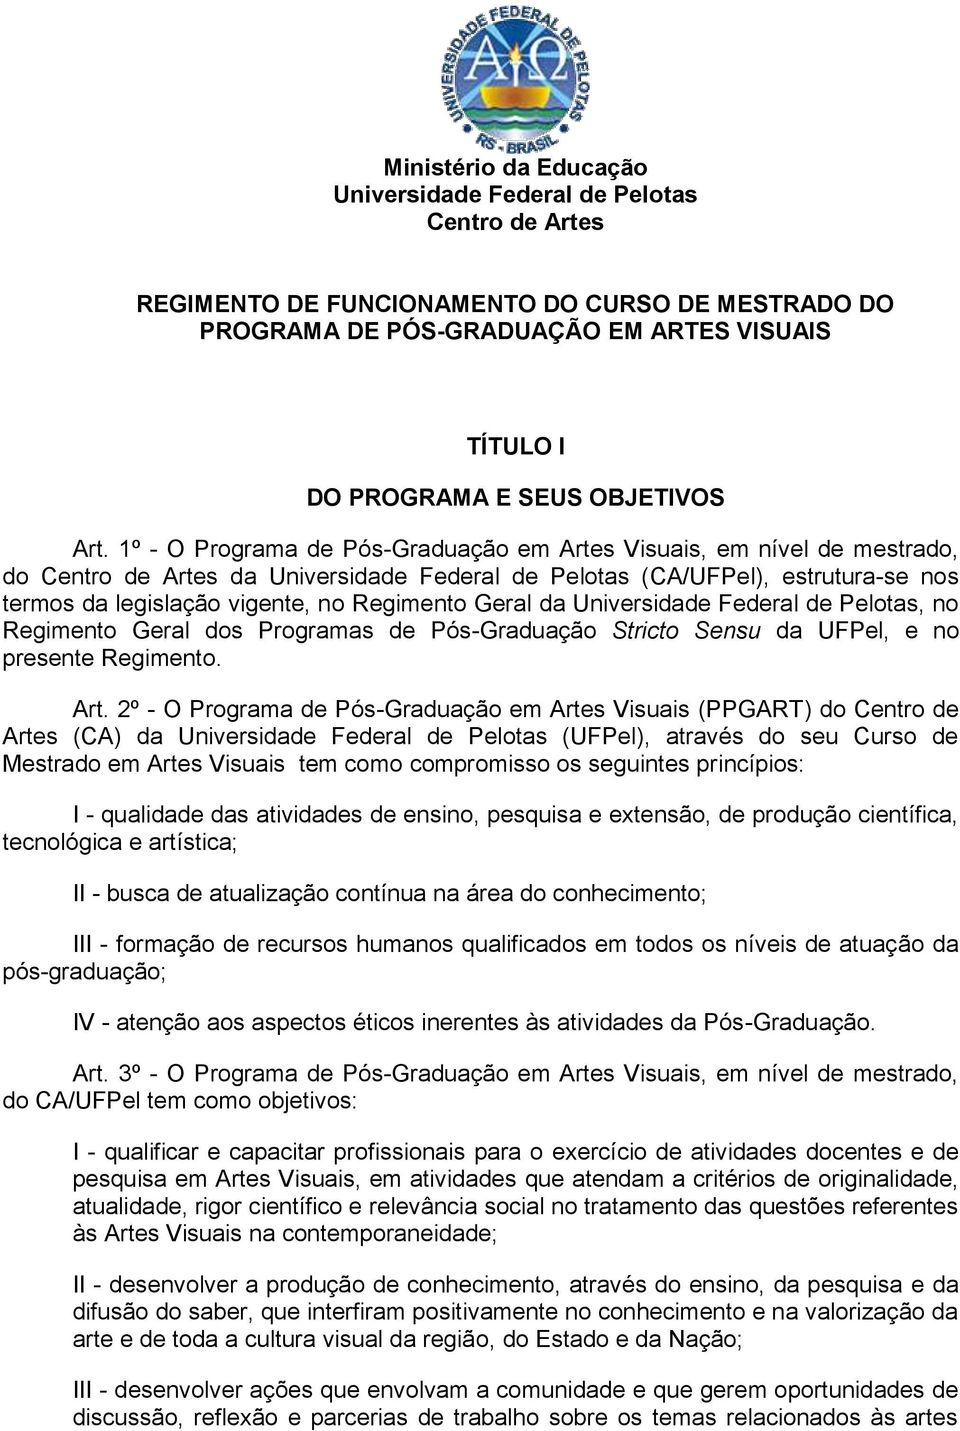 1º - O Programa de Pós-Graduação em Artes Visuais, em nível de mestrado, do Centro de Artes da Universidade Federal de Pelotas (CA/UFPel), estrutura-se nos termos da legislação vigente, no Regimento